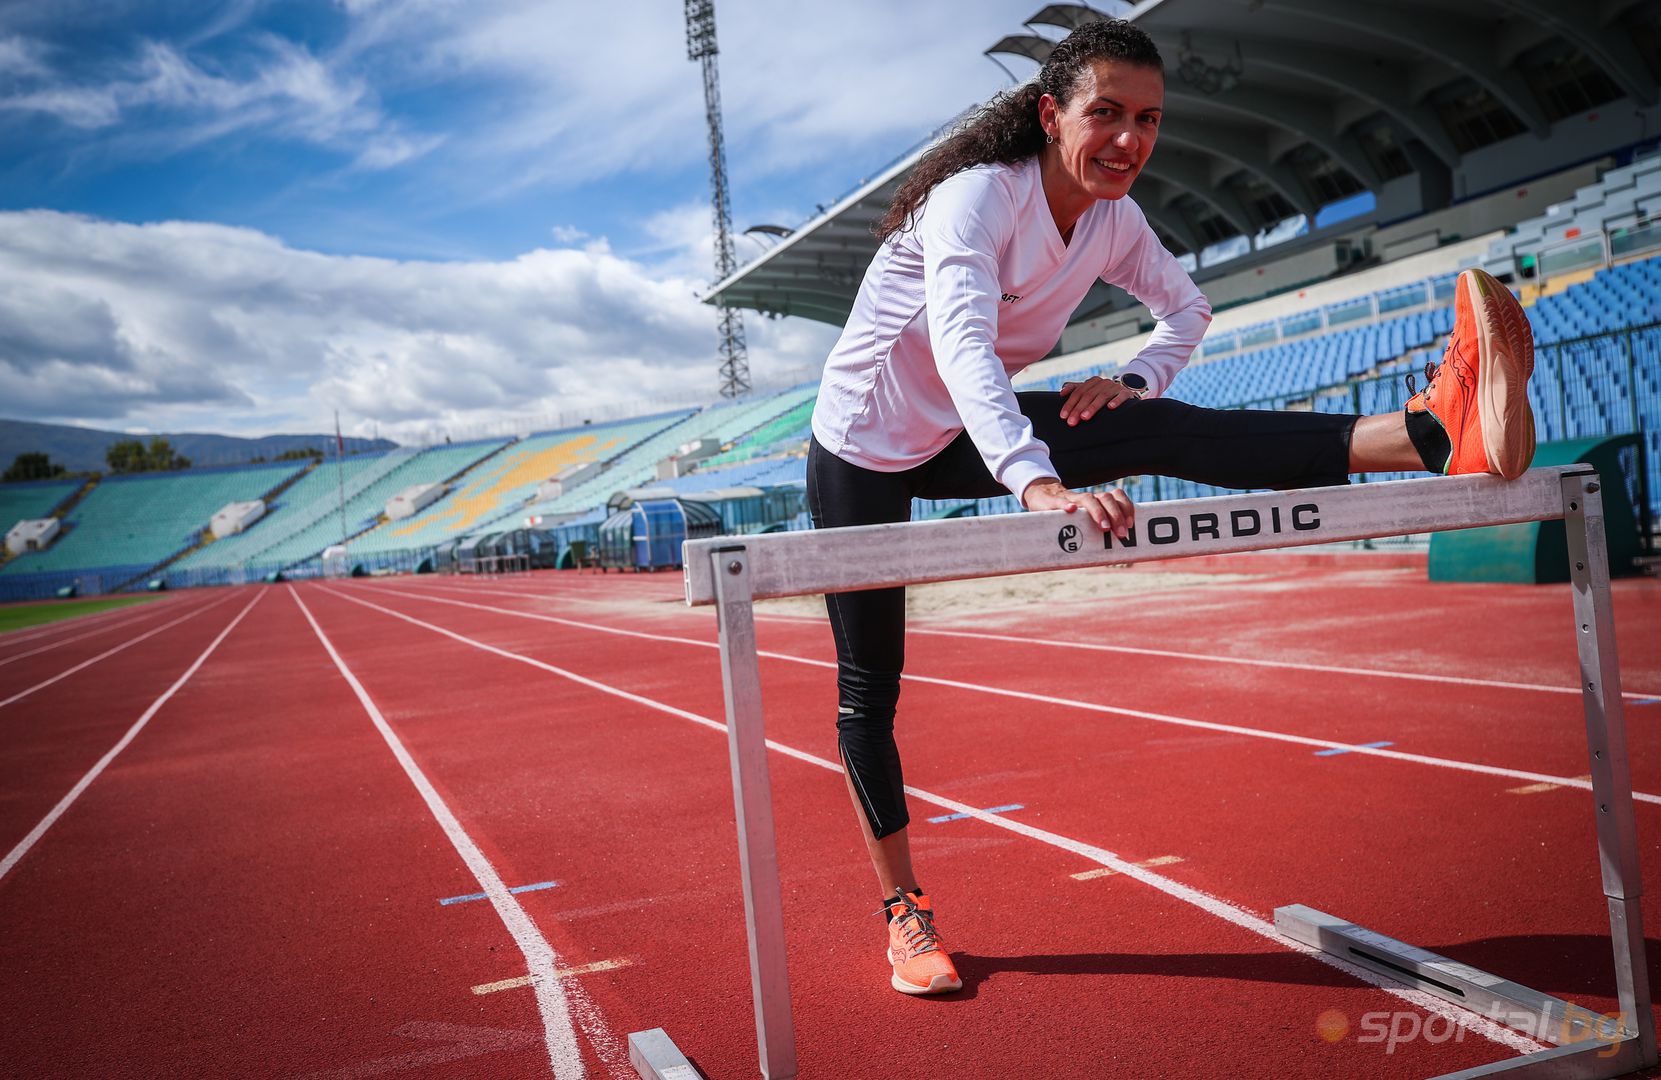  Интервю със международната рекордьорка за ветерани в скока на дължина Магдалена Христова 